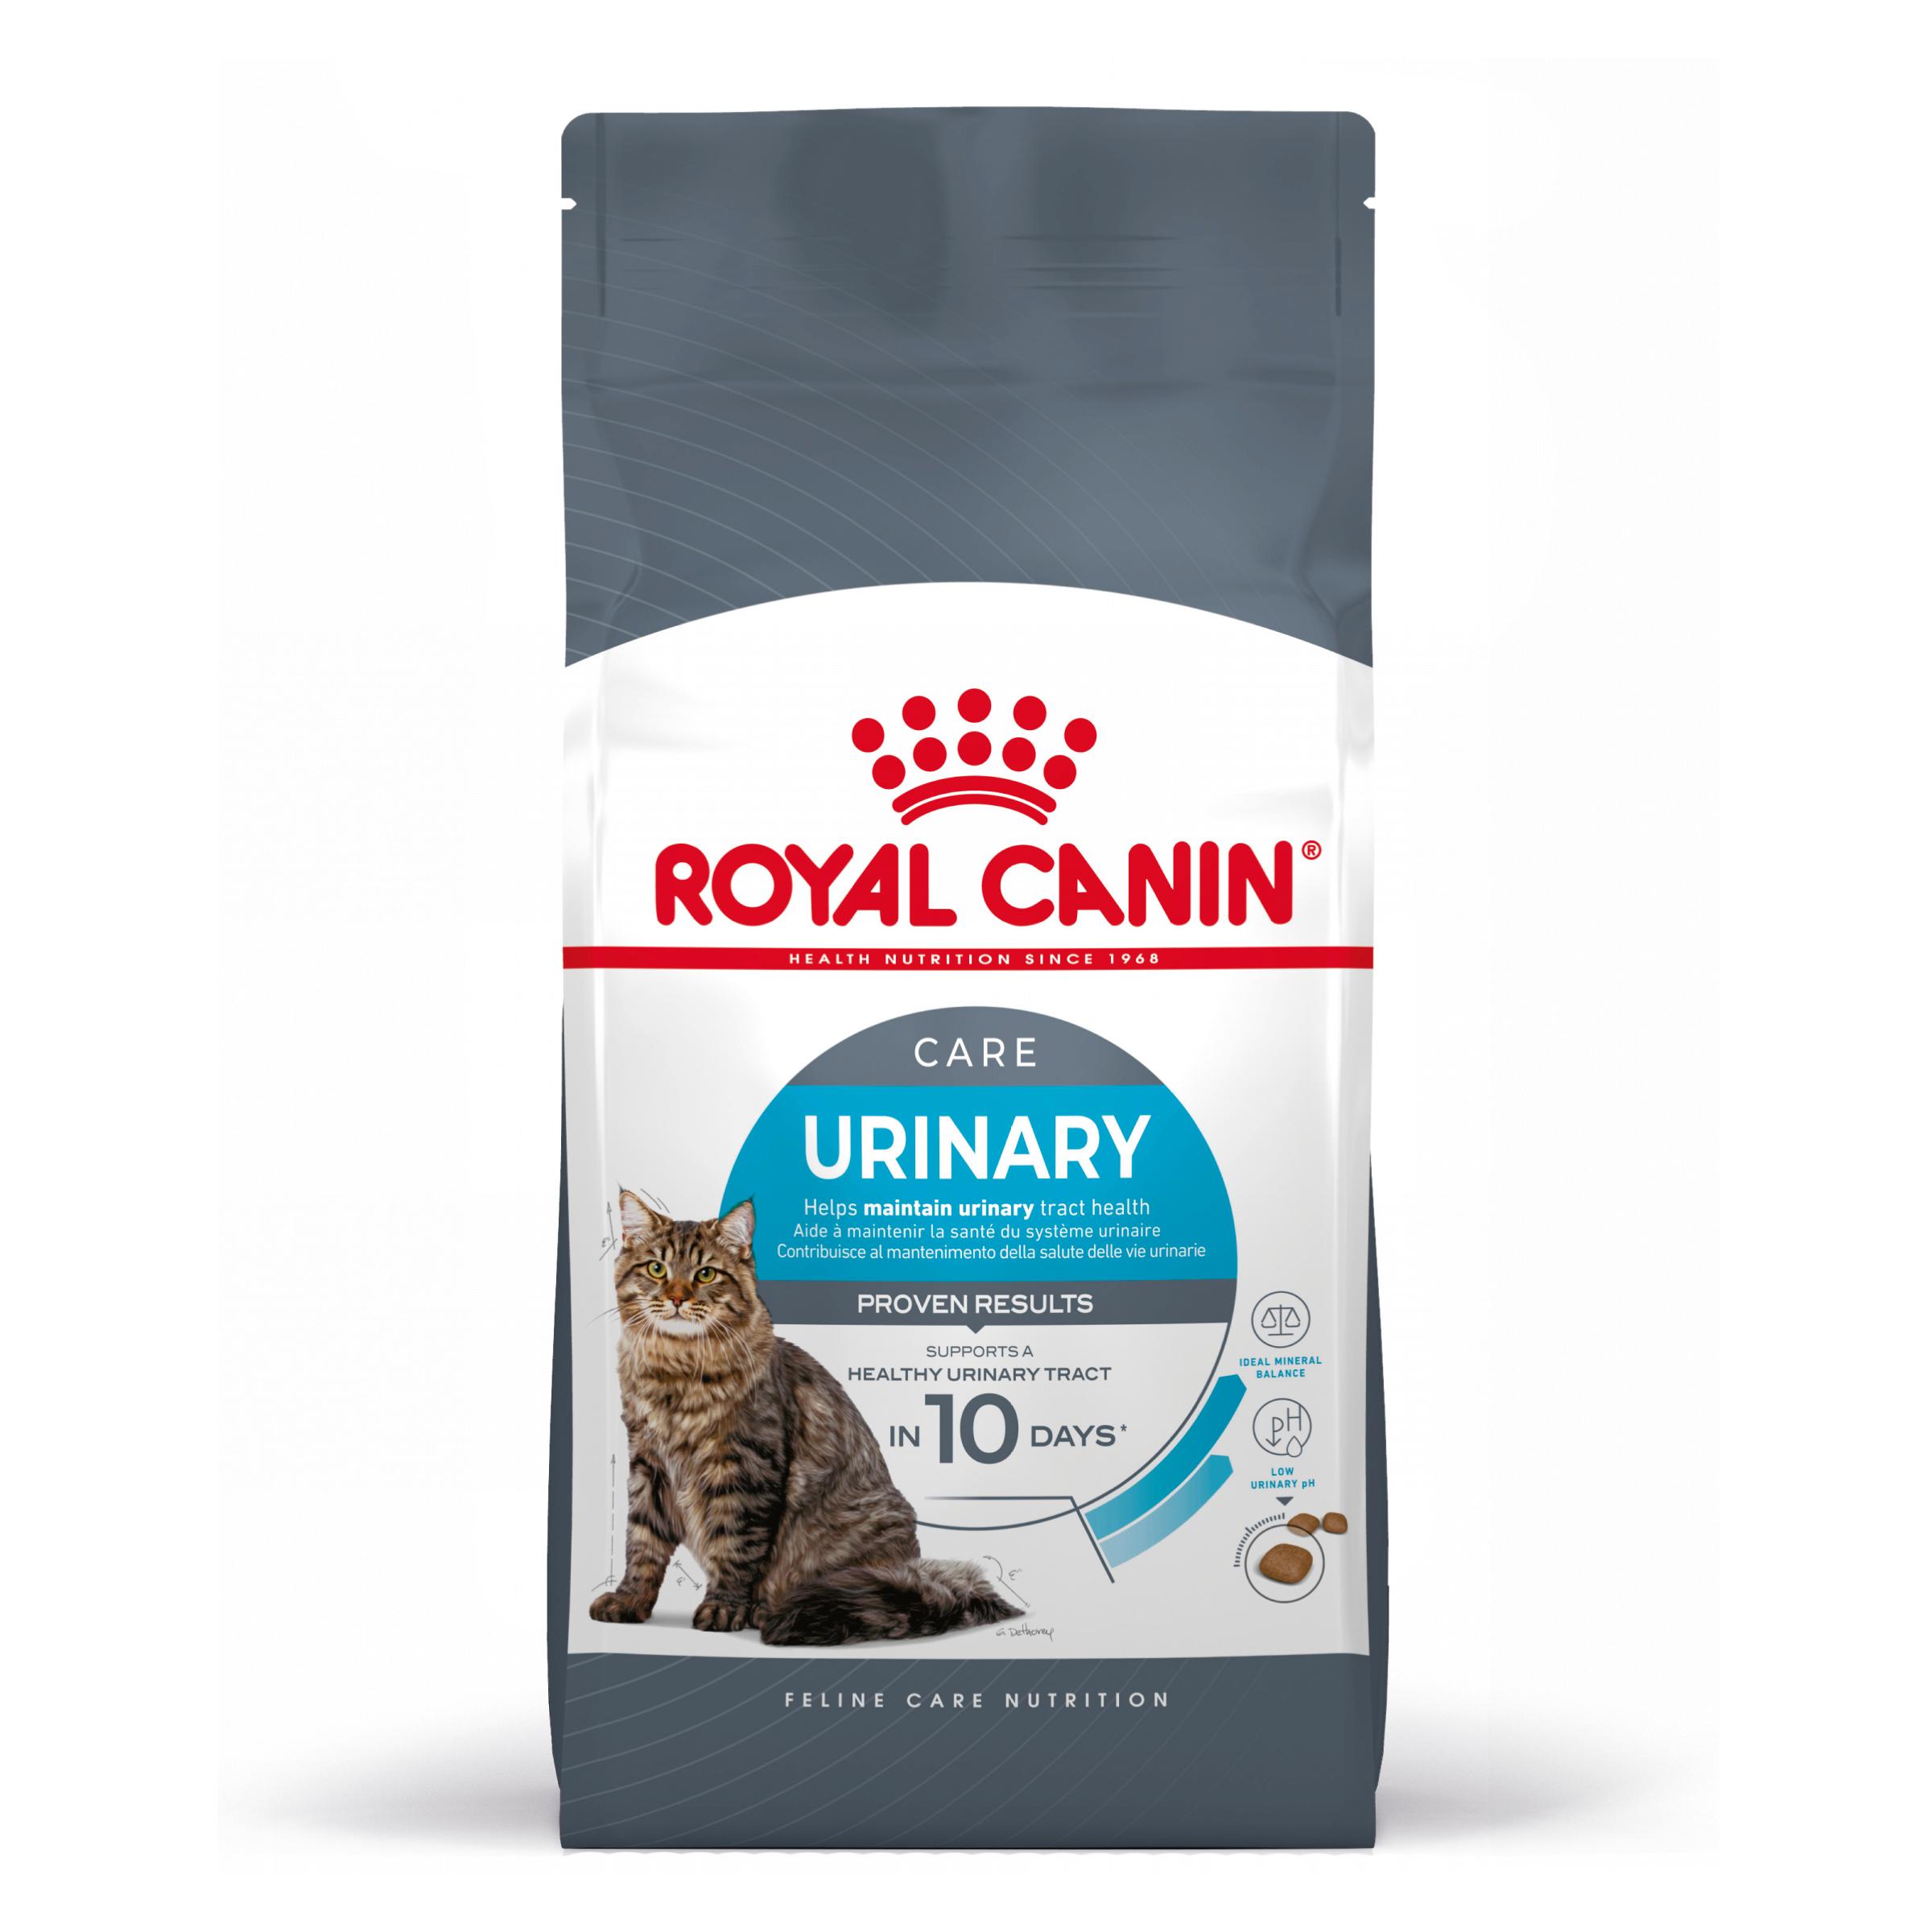 Royal Canin Urinary Care - Aliment pour chats adultes. - Recommandé pour aider à maintenir la santé du système urinaire - 400G